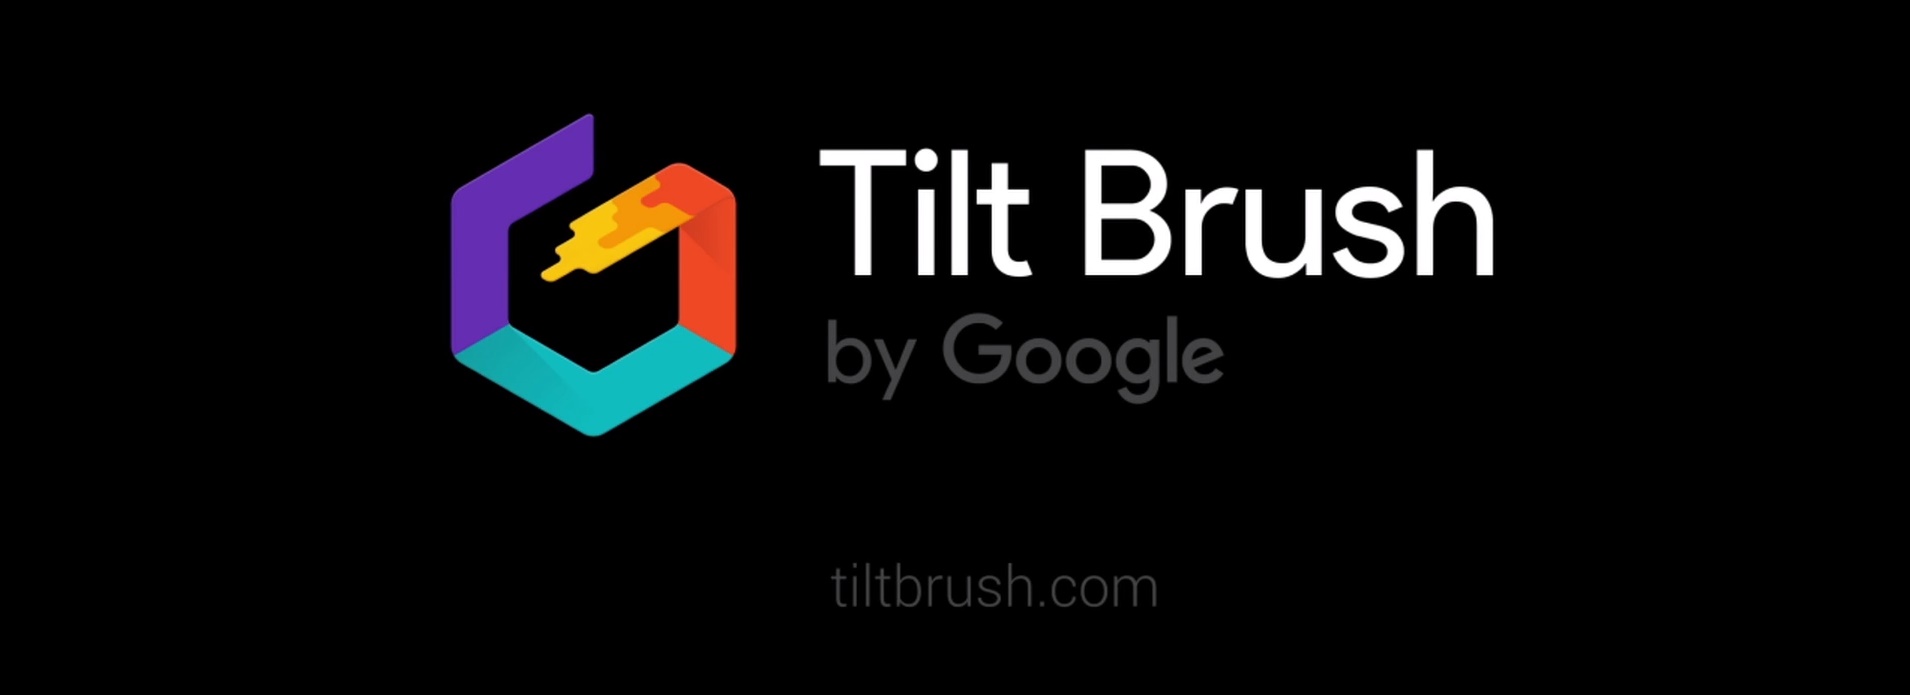 Tilt Brush By Google